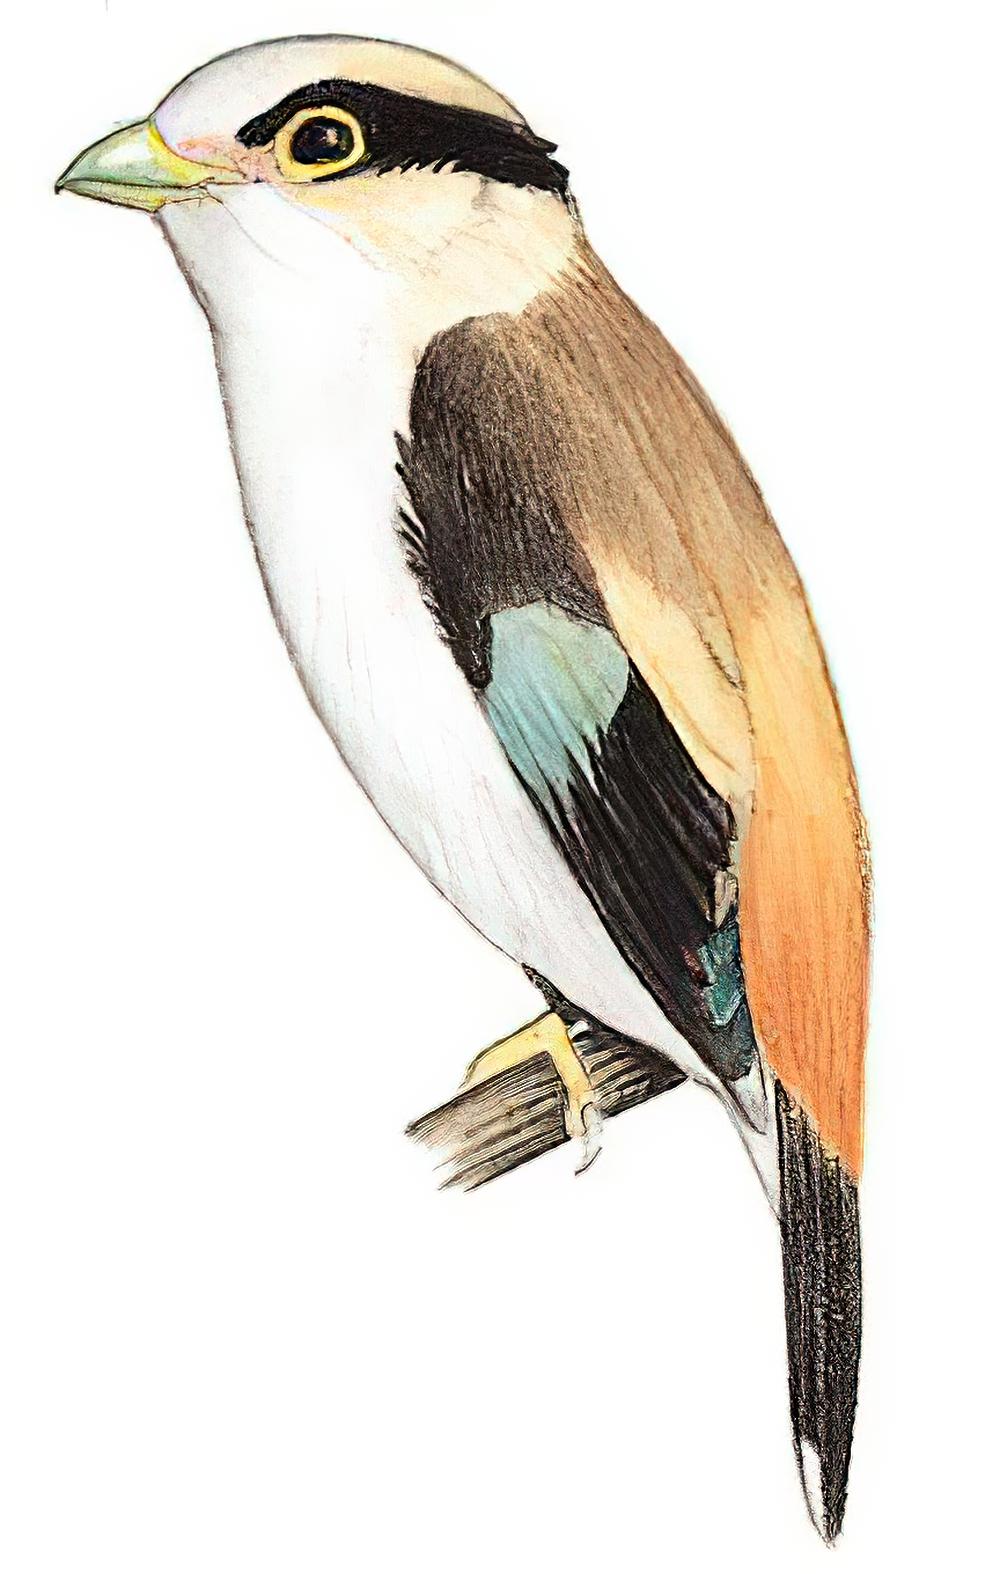 银胸丝冠鸟 / Silver-breasted Broadbill / Serilophus lunatus